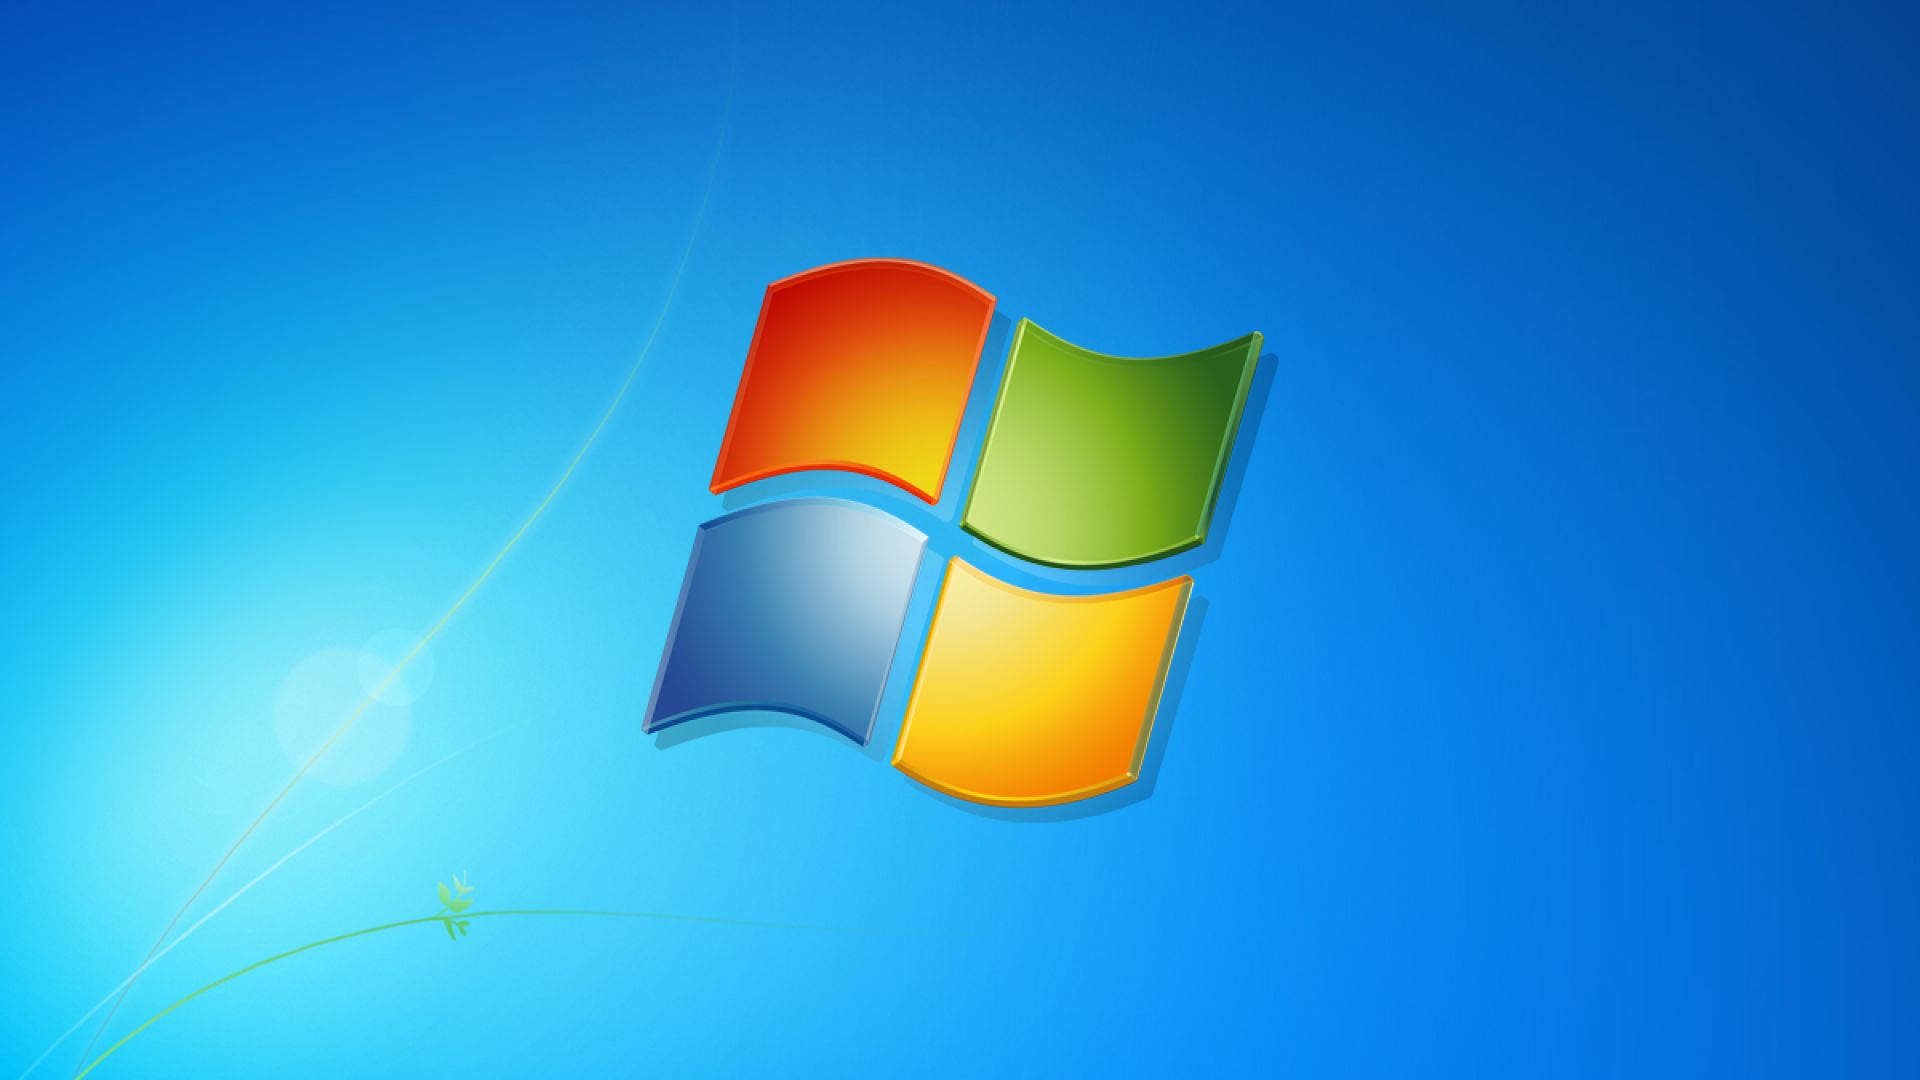 Microsоft коригира сериозен пропуск във всички версии на Windows